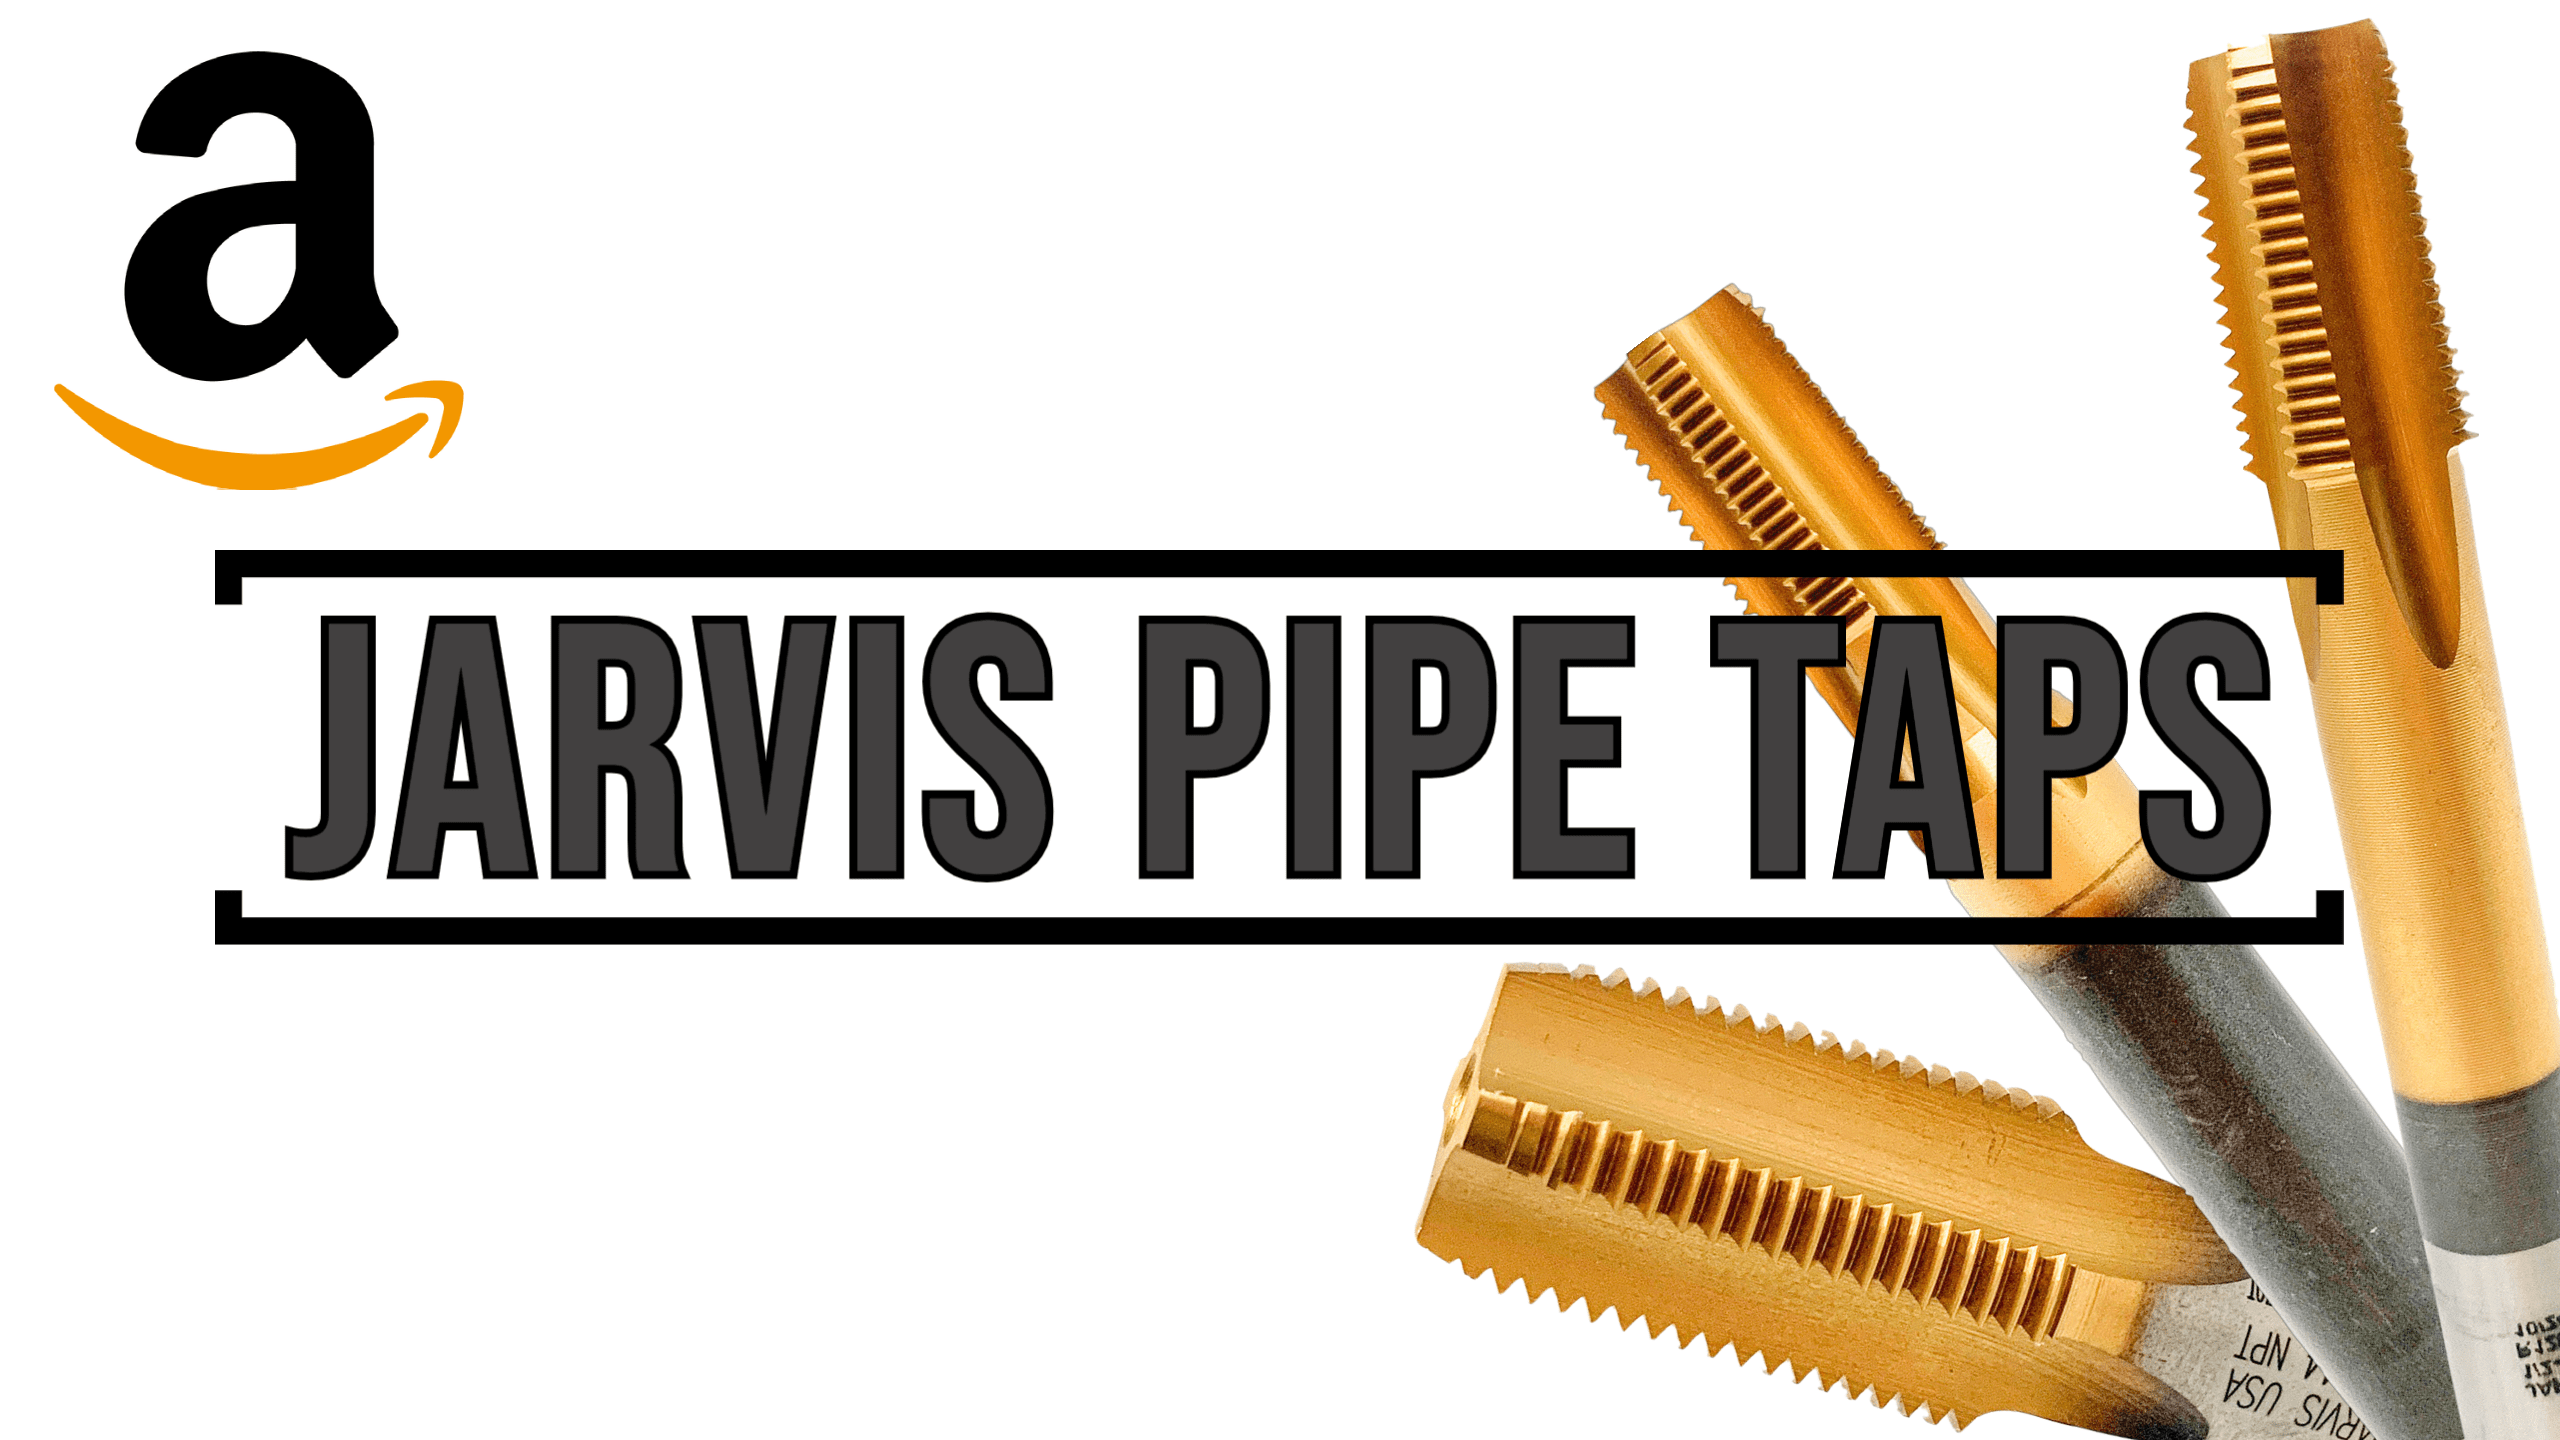 Jarvis 3/4-14 NPT 5 flute thread tap 